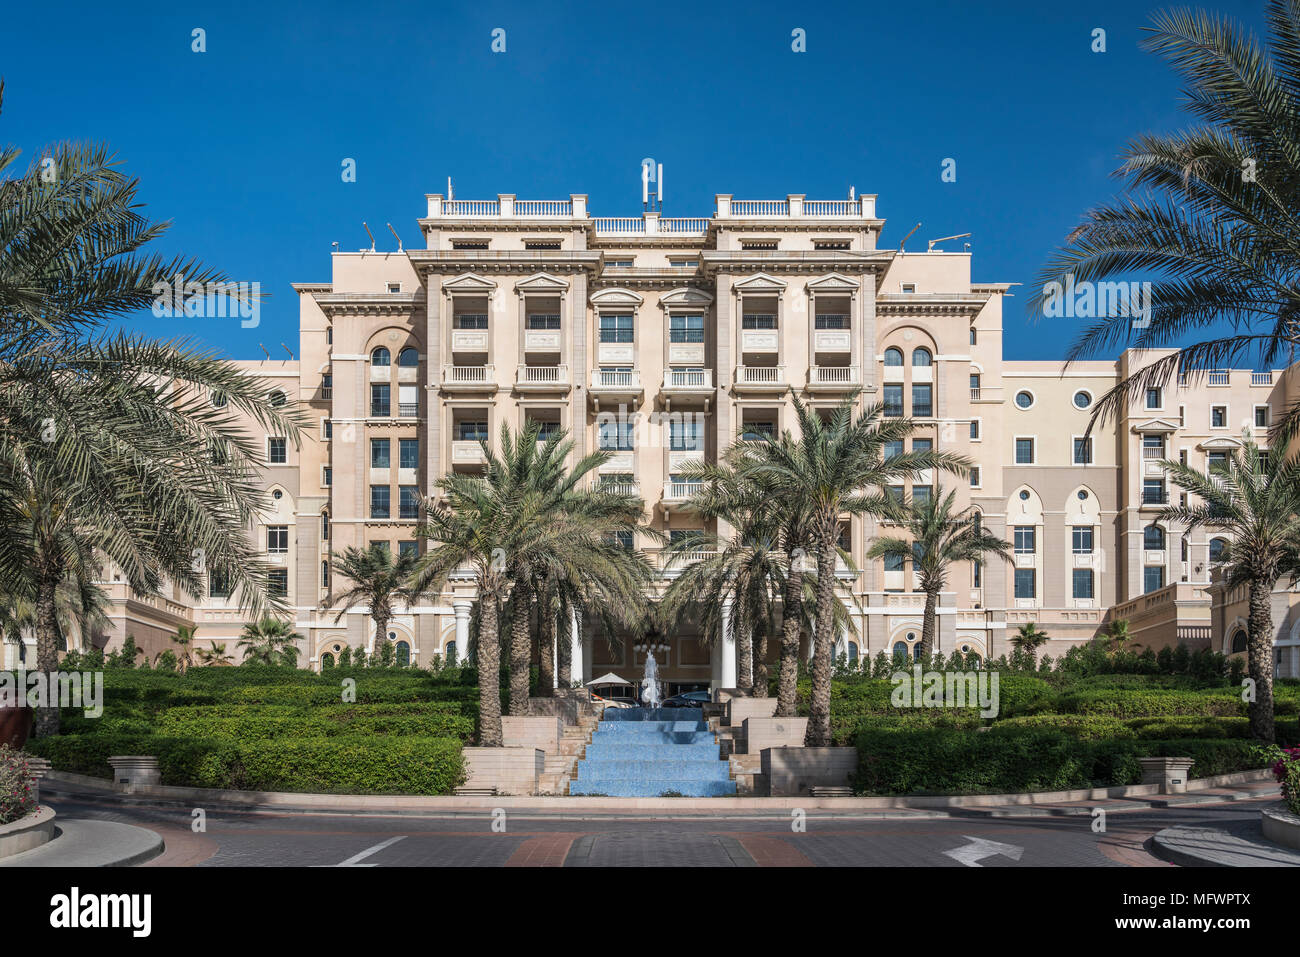 Das Westin Hotel im Marina District von Dubai, Vereinigte Arabische  Emirate, Naher Osten Stockfotografie - Alamy